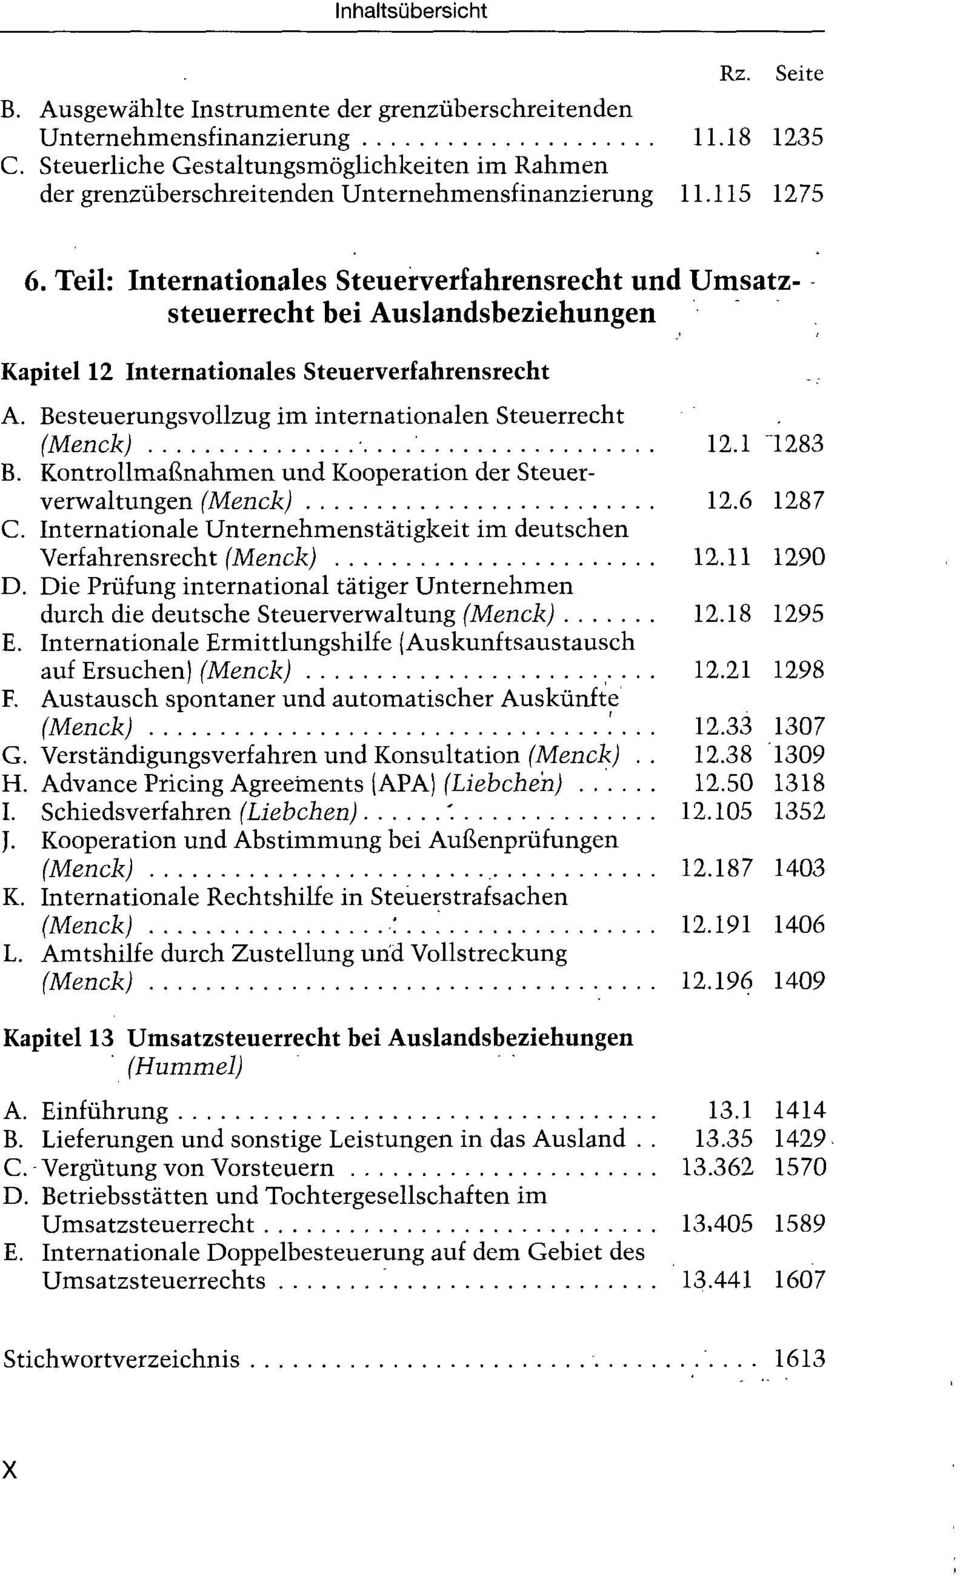 Besteuerungsvollzug im internationalen Steuerrecht (Menck) ' 12.1 "1283 B. Kontrollmaßnahmen und Kooperation der Steuerverwaltungen (Menck) 12.6 1287 C.